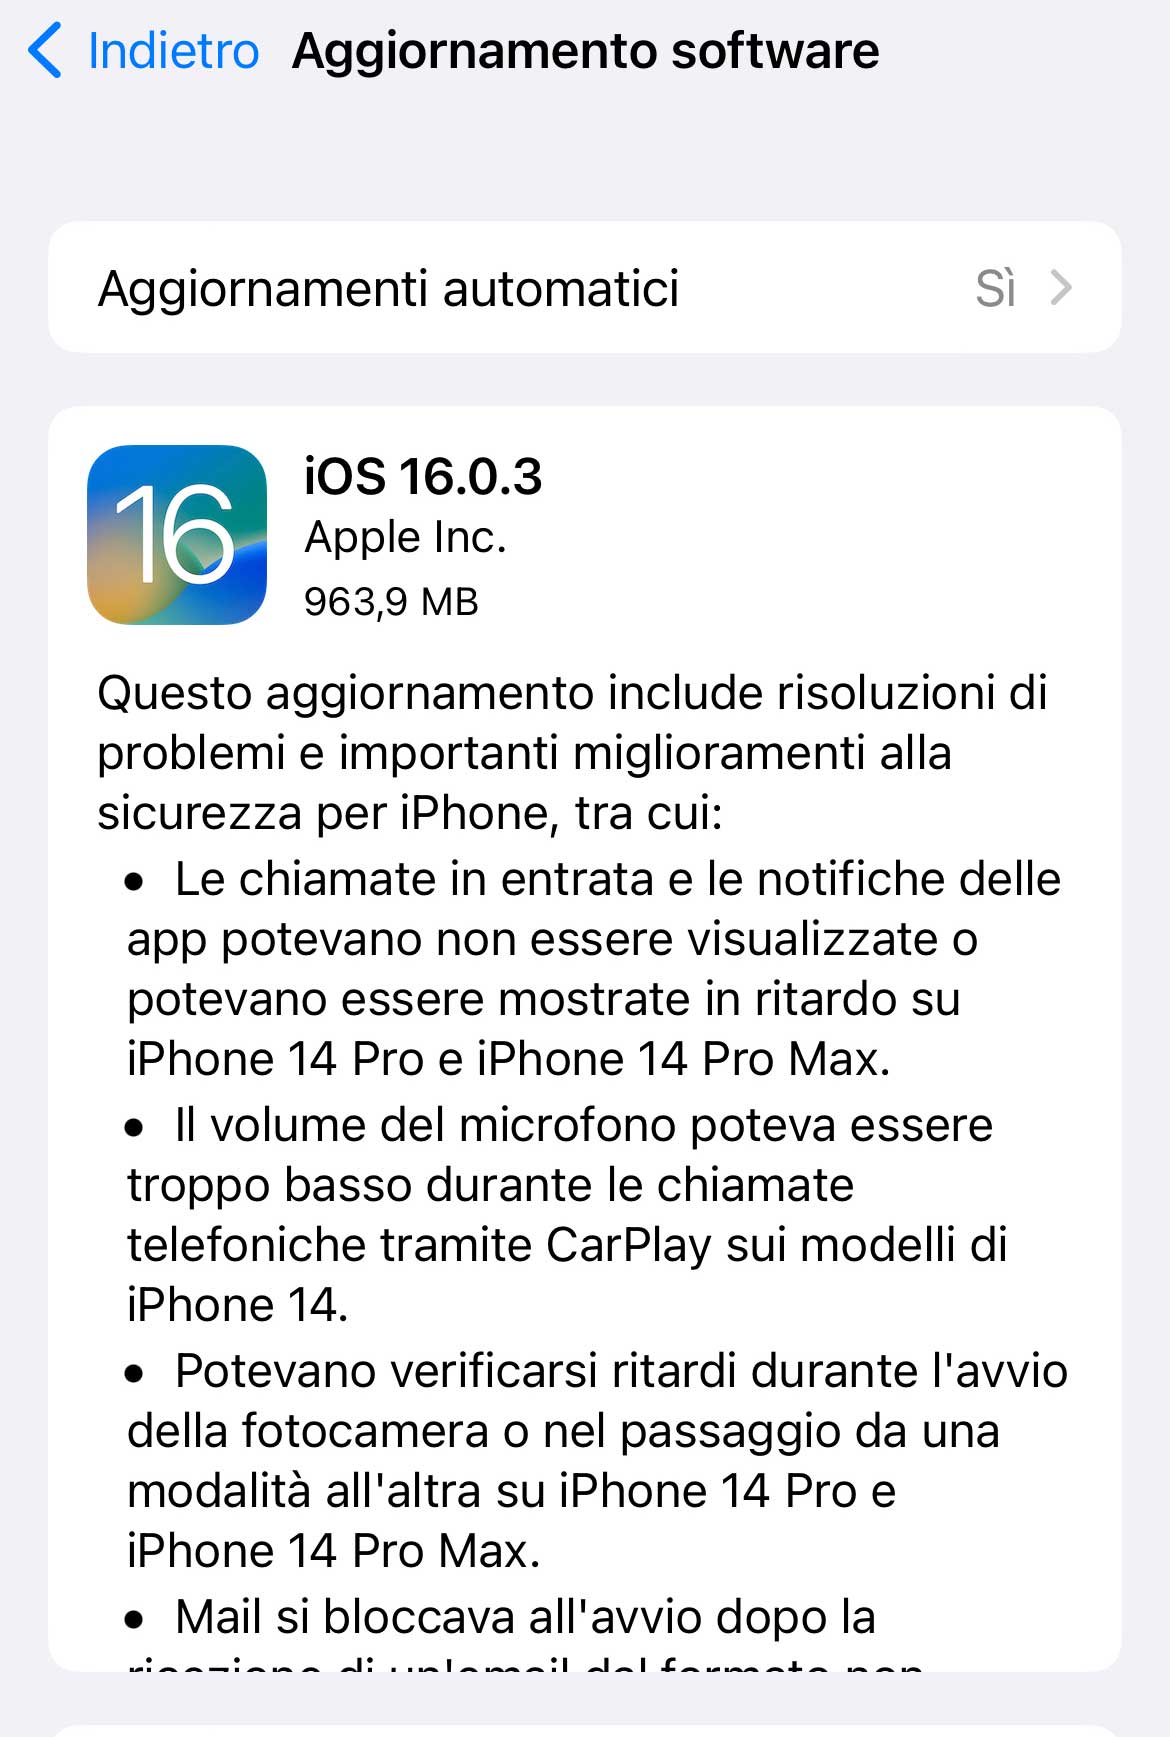 Disponibile aggiornamento a iOS 16.0.3